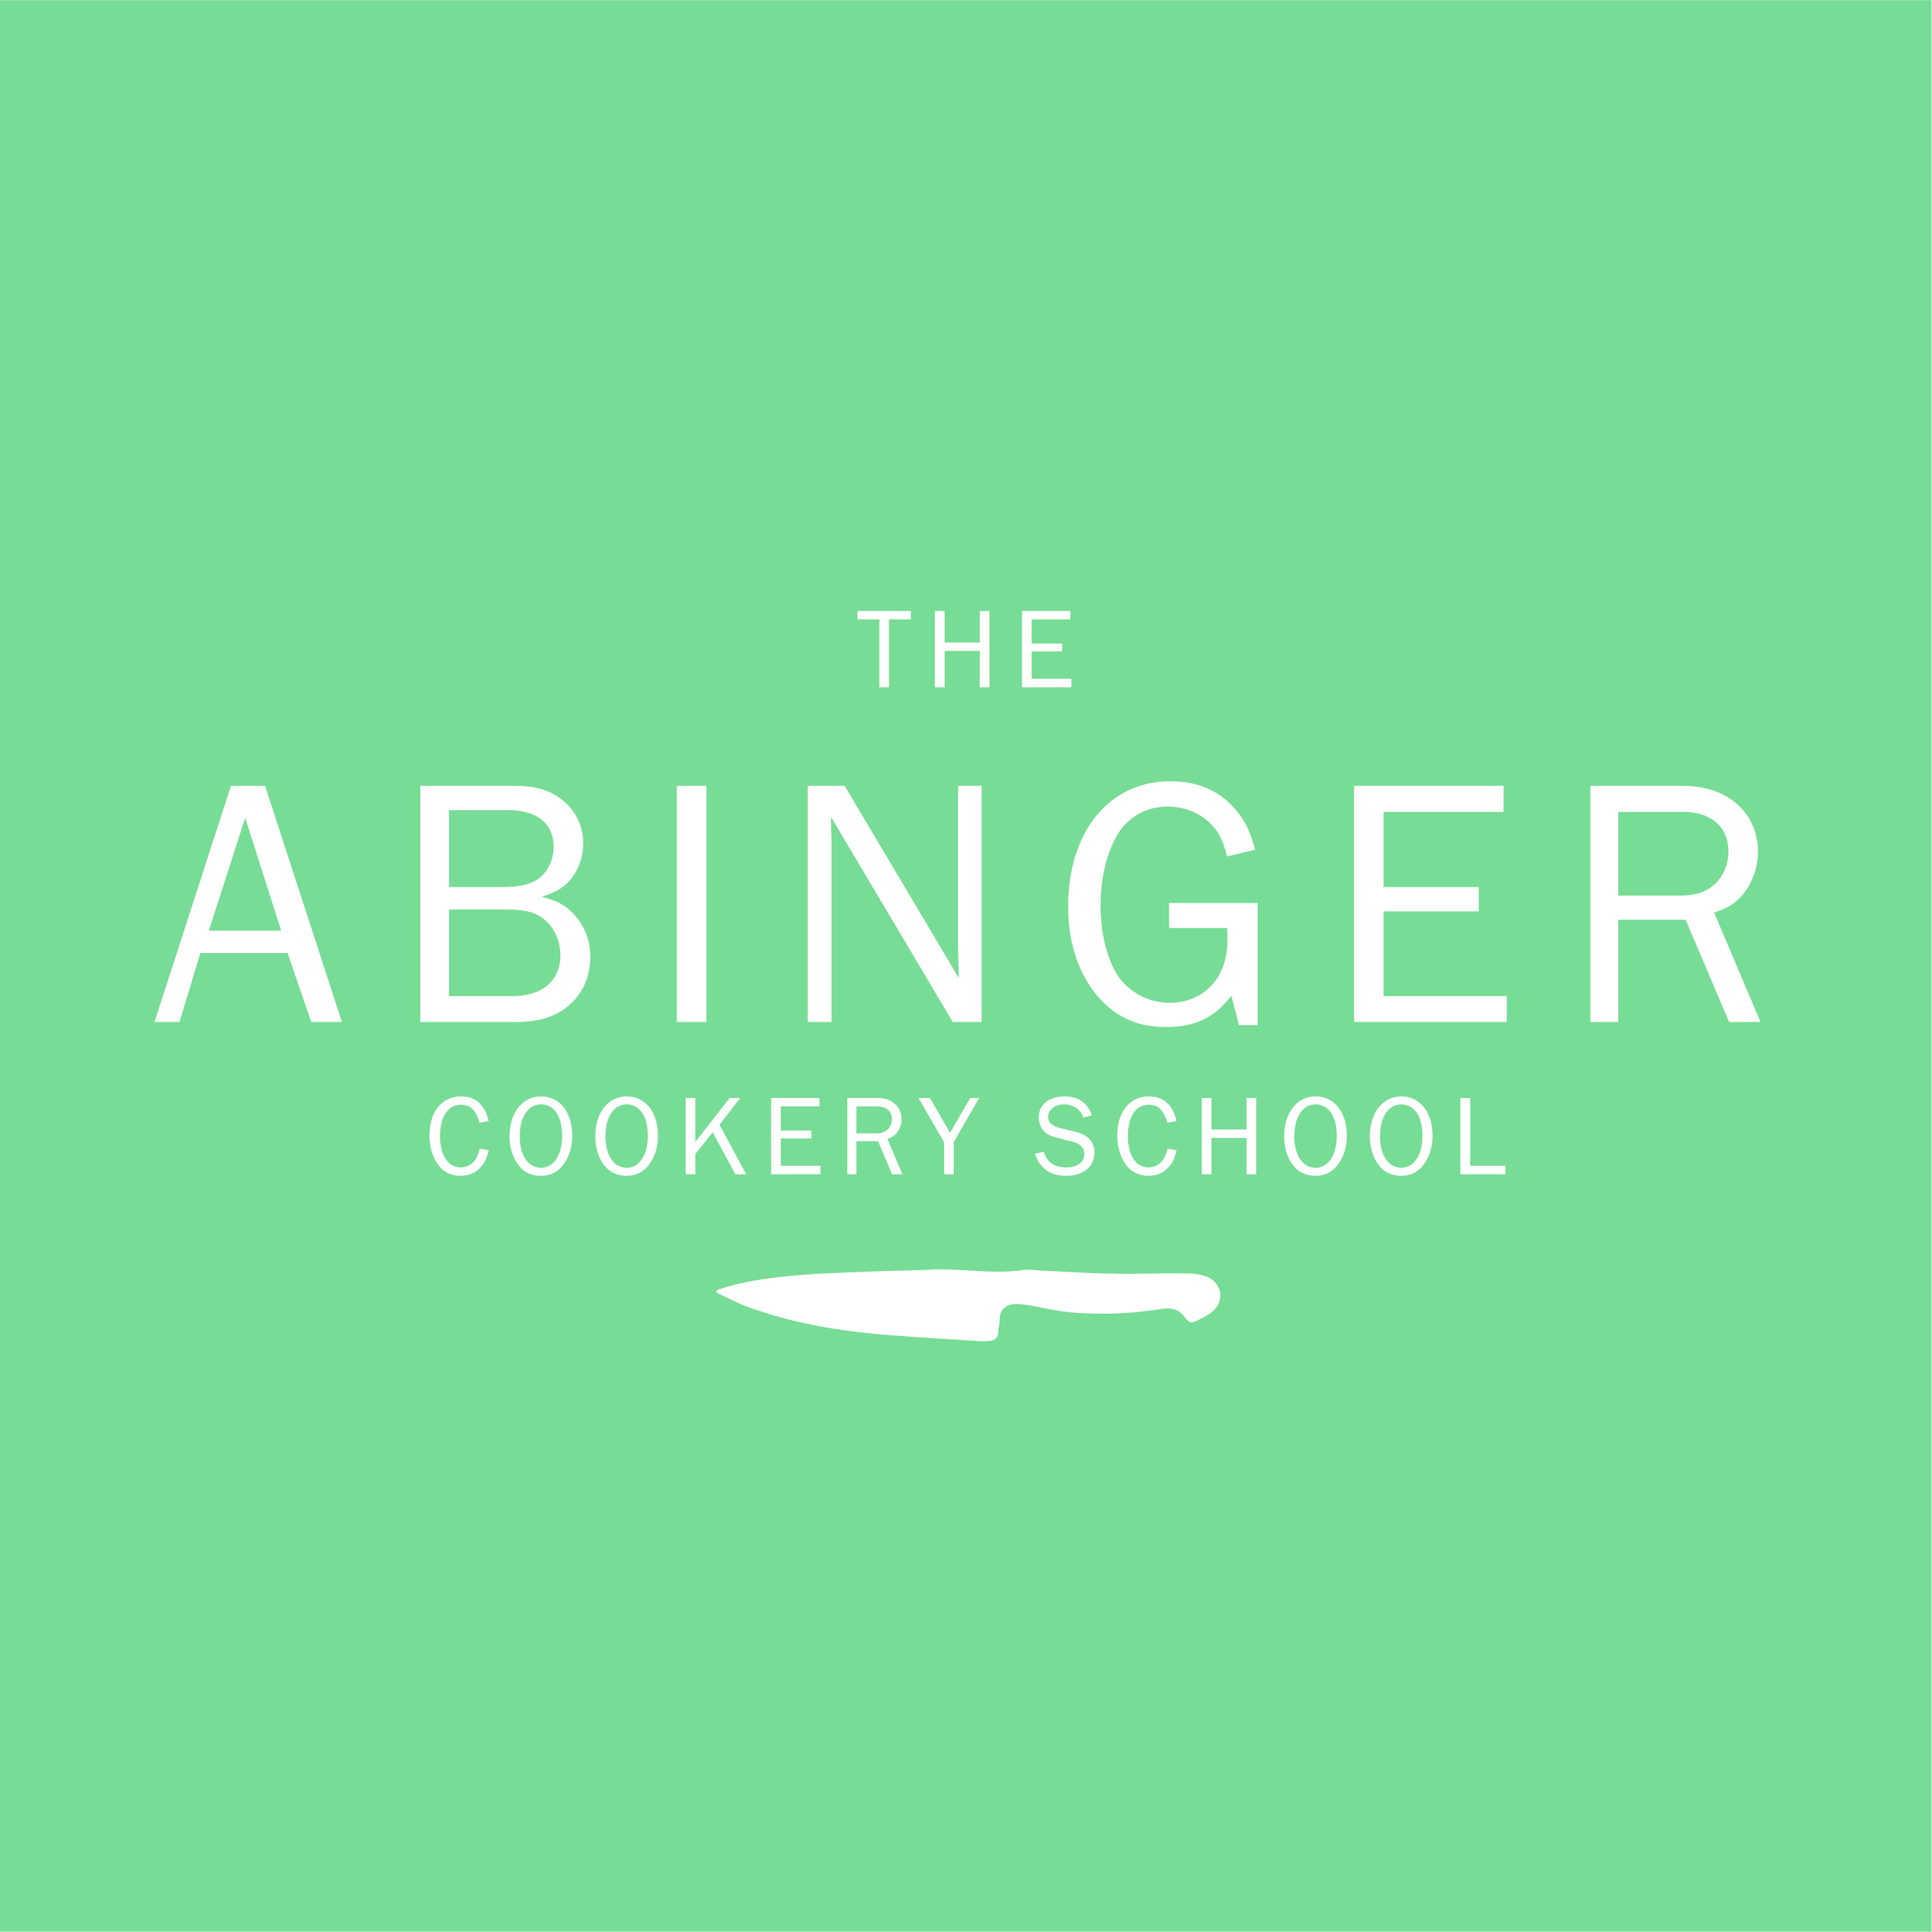 The Abinger Cookery School in 